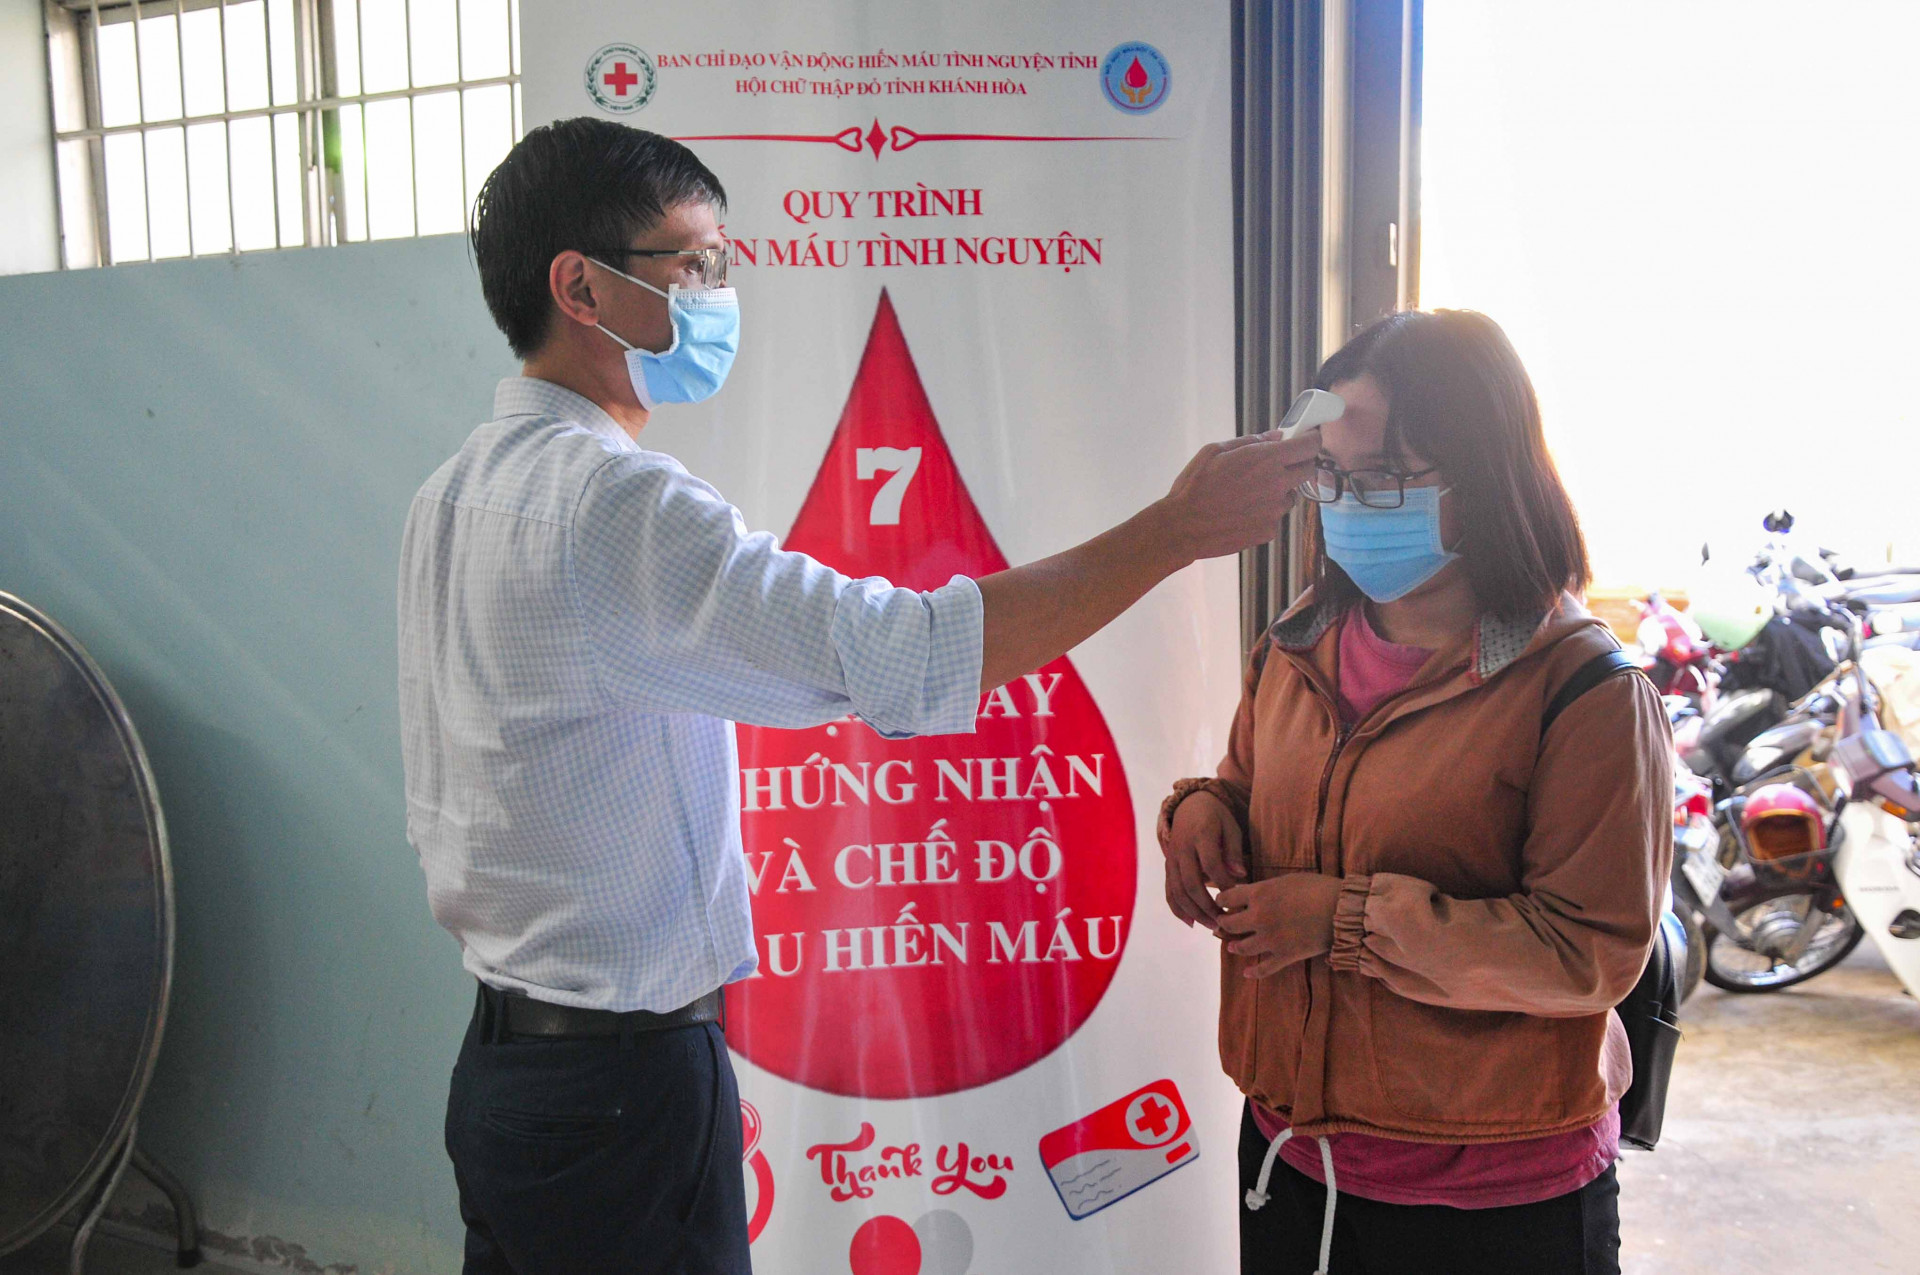 Các tình nguyện viên đến hiến máu đều được đo thân nhiệt, phải đeo khẩu trang và đảm bảo các quy định an toàn về phòng, chống dịch